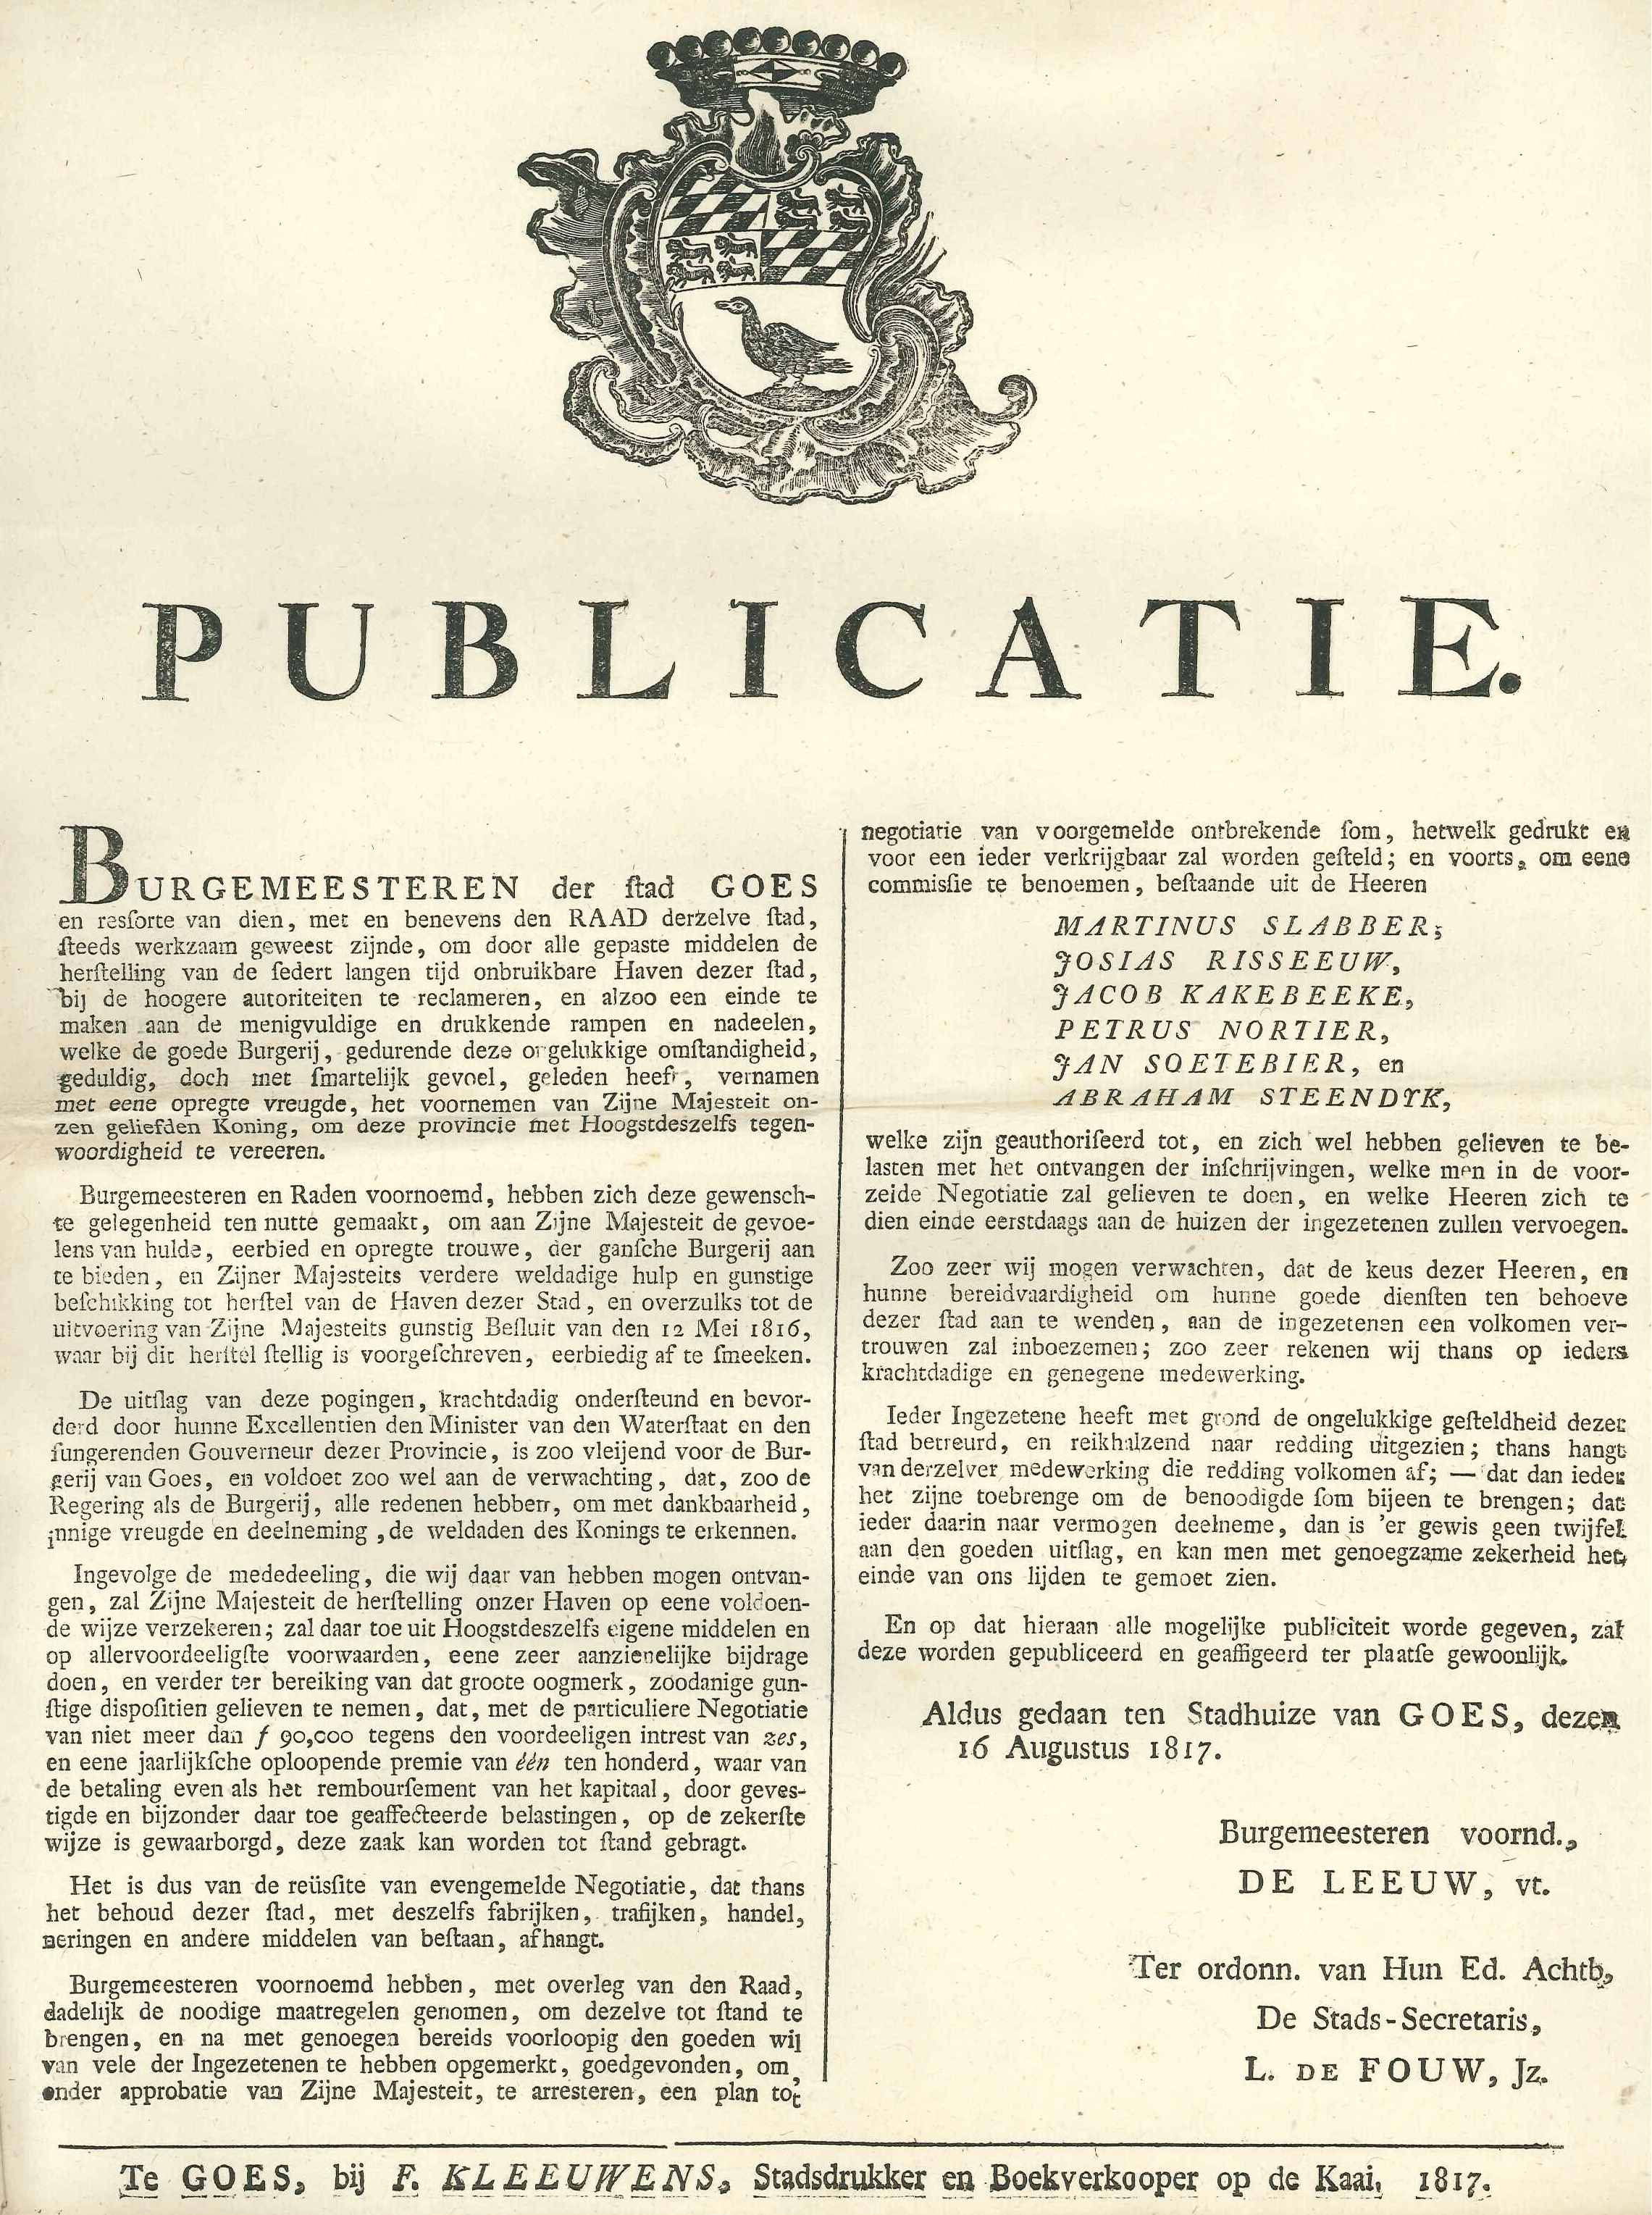 Bekendmaking over een fonds voor het herstel van de haven, 1817.